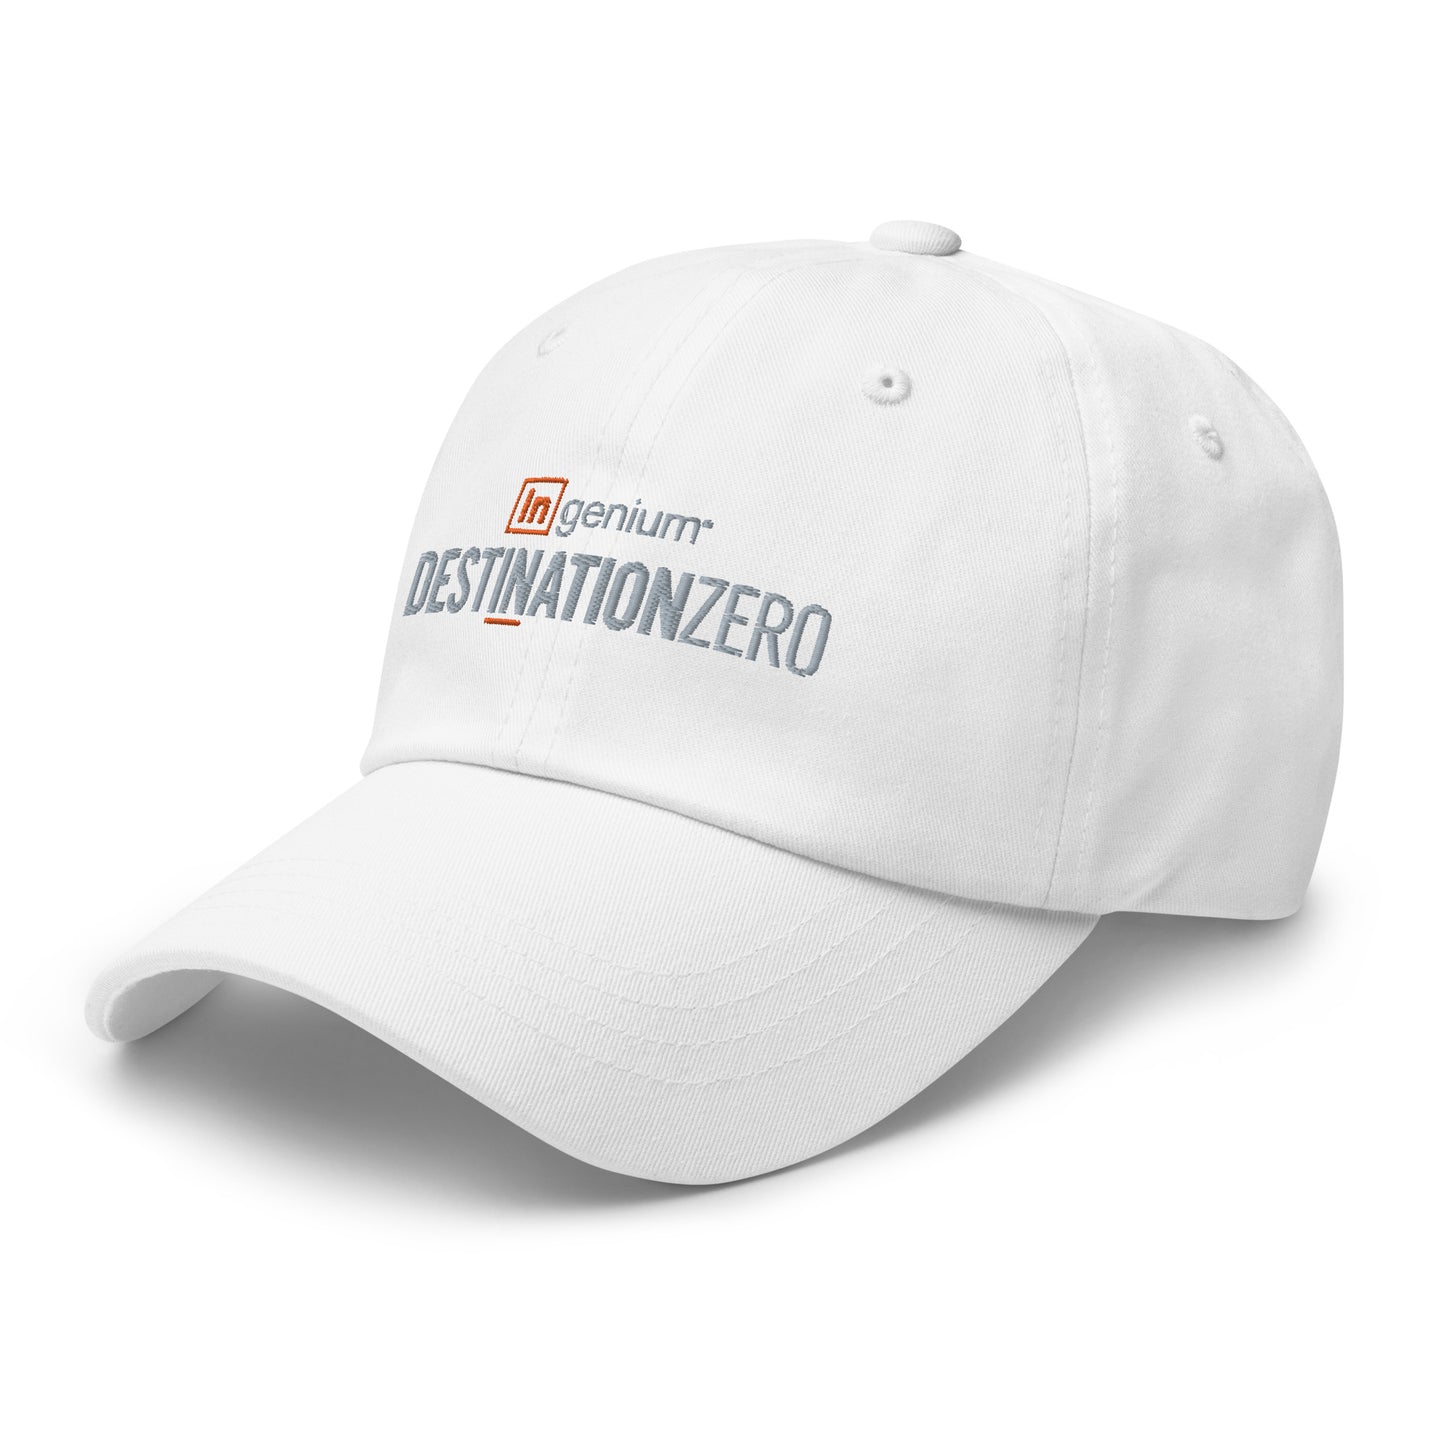 Classic dad hat - "In" - Destination Zero Team